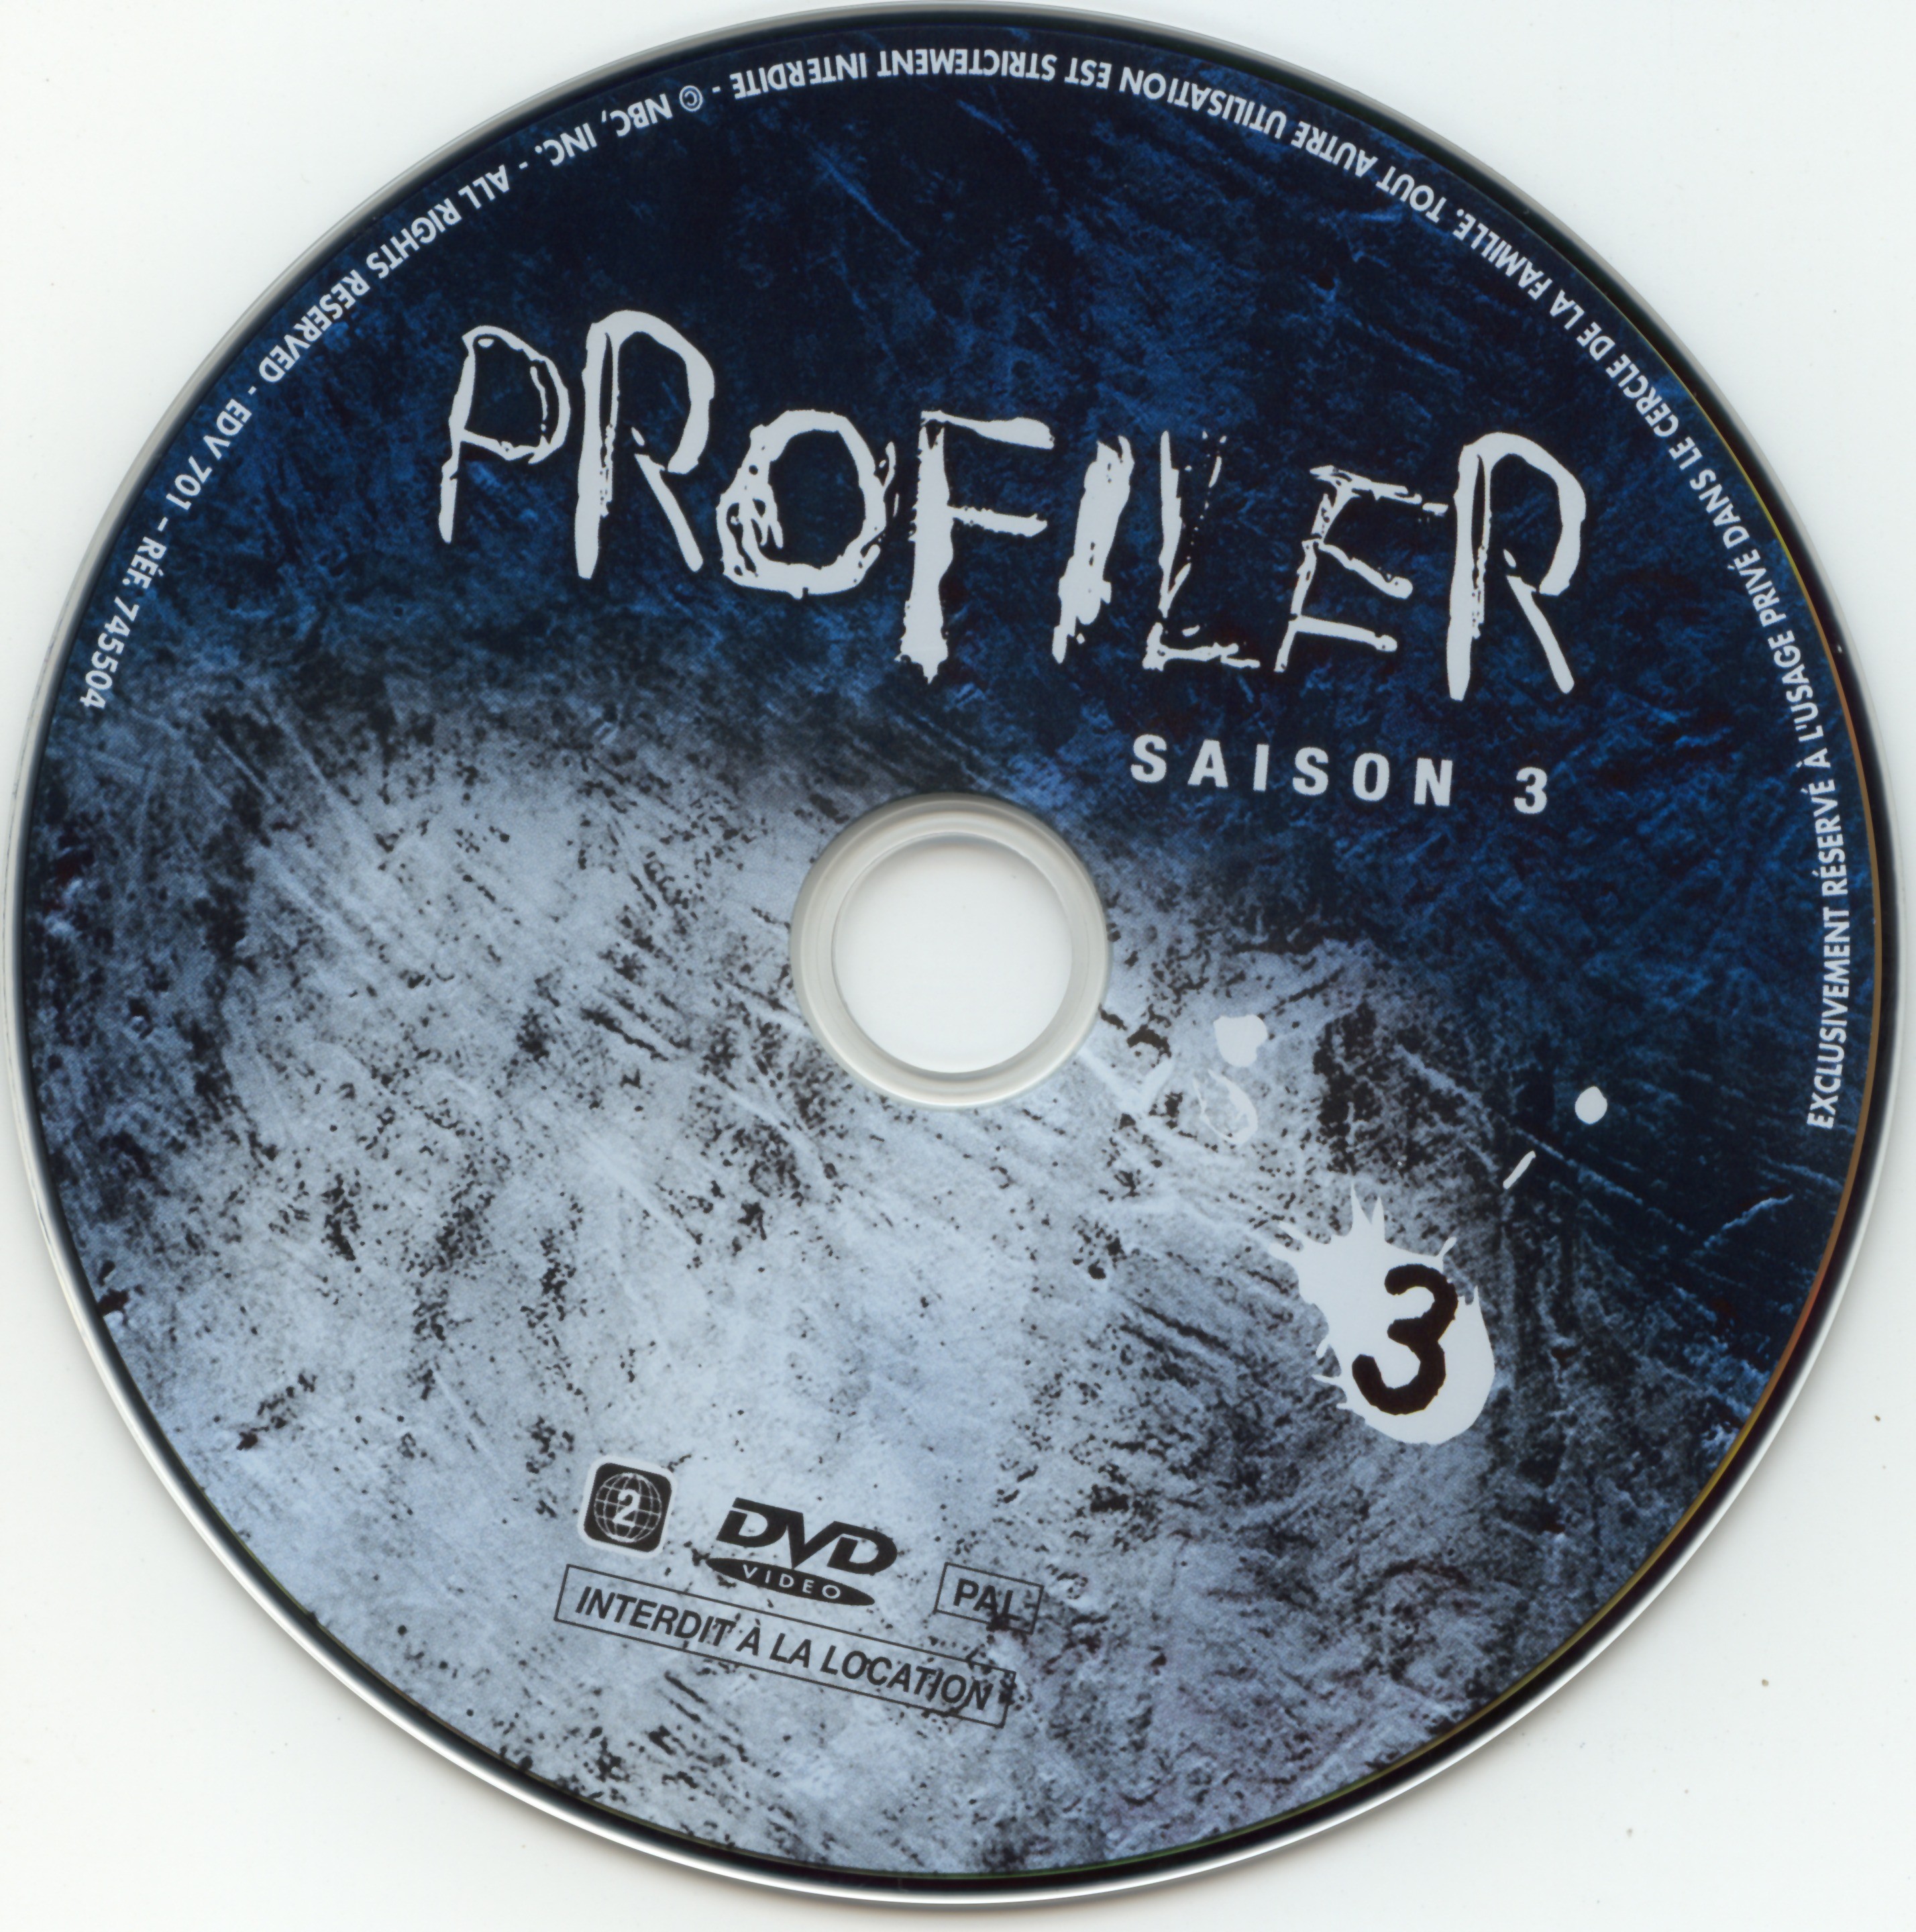 Profiler saison 3 DVD 3